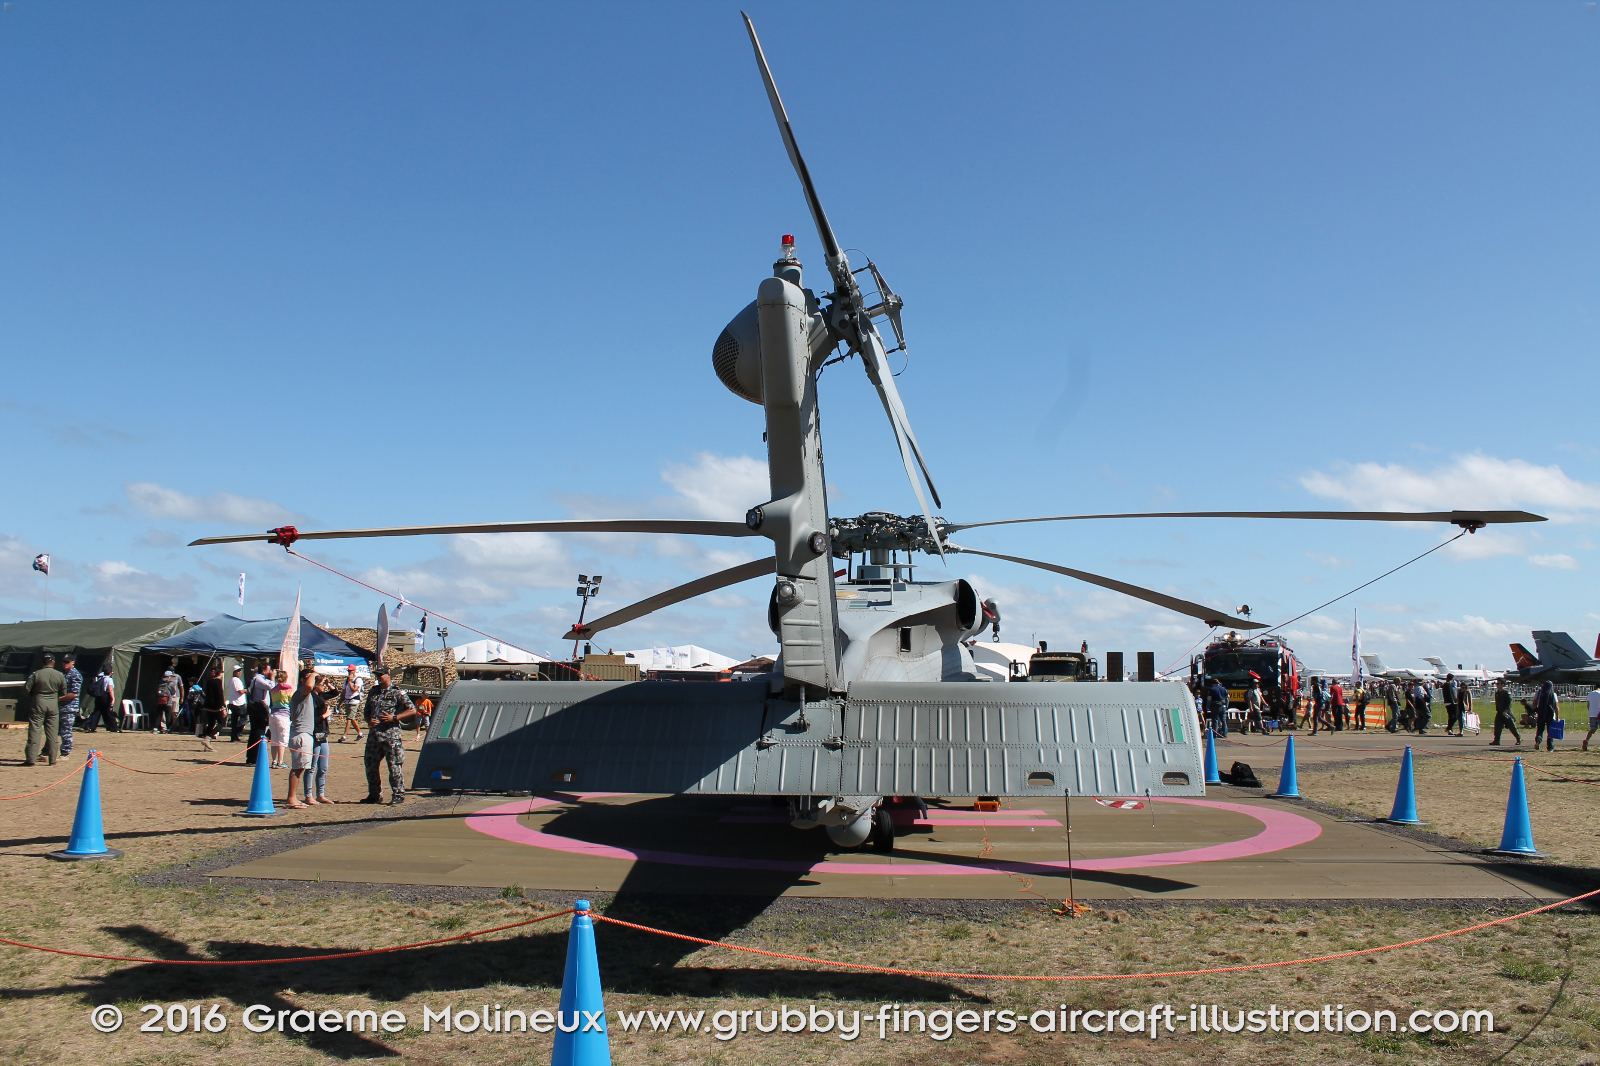 SIKORSKY_MH-60R_Seahawk_N48-005_Avalon_2015_07_GrubbyFingers